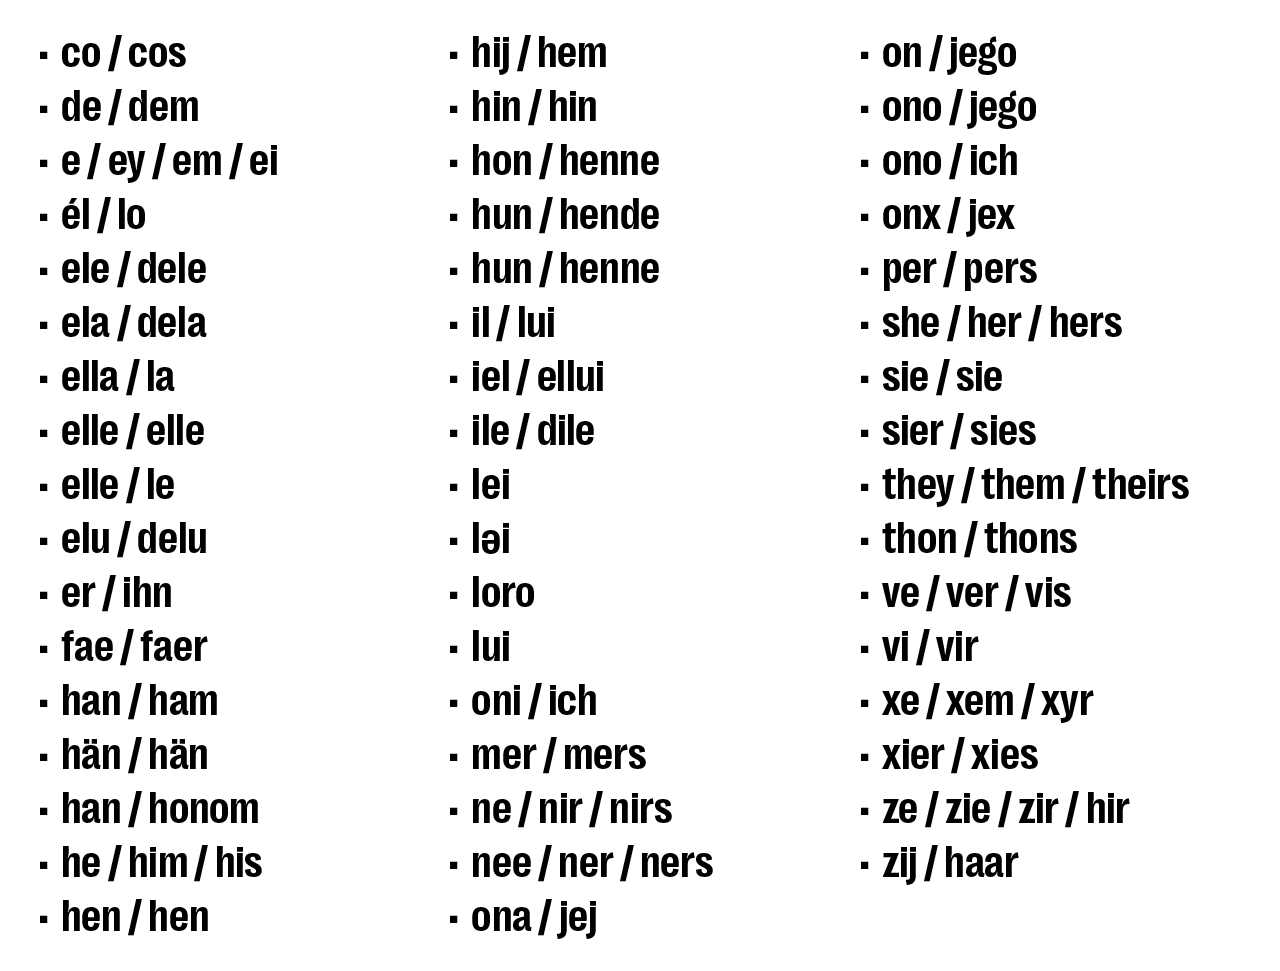 Liste der verfügbaren Pronomen auf Yubo